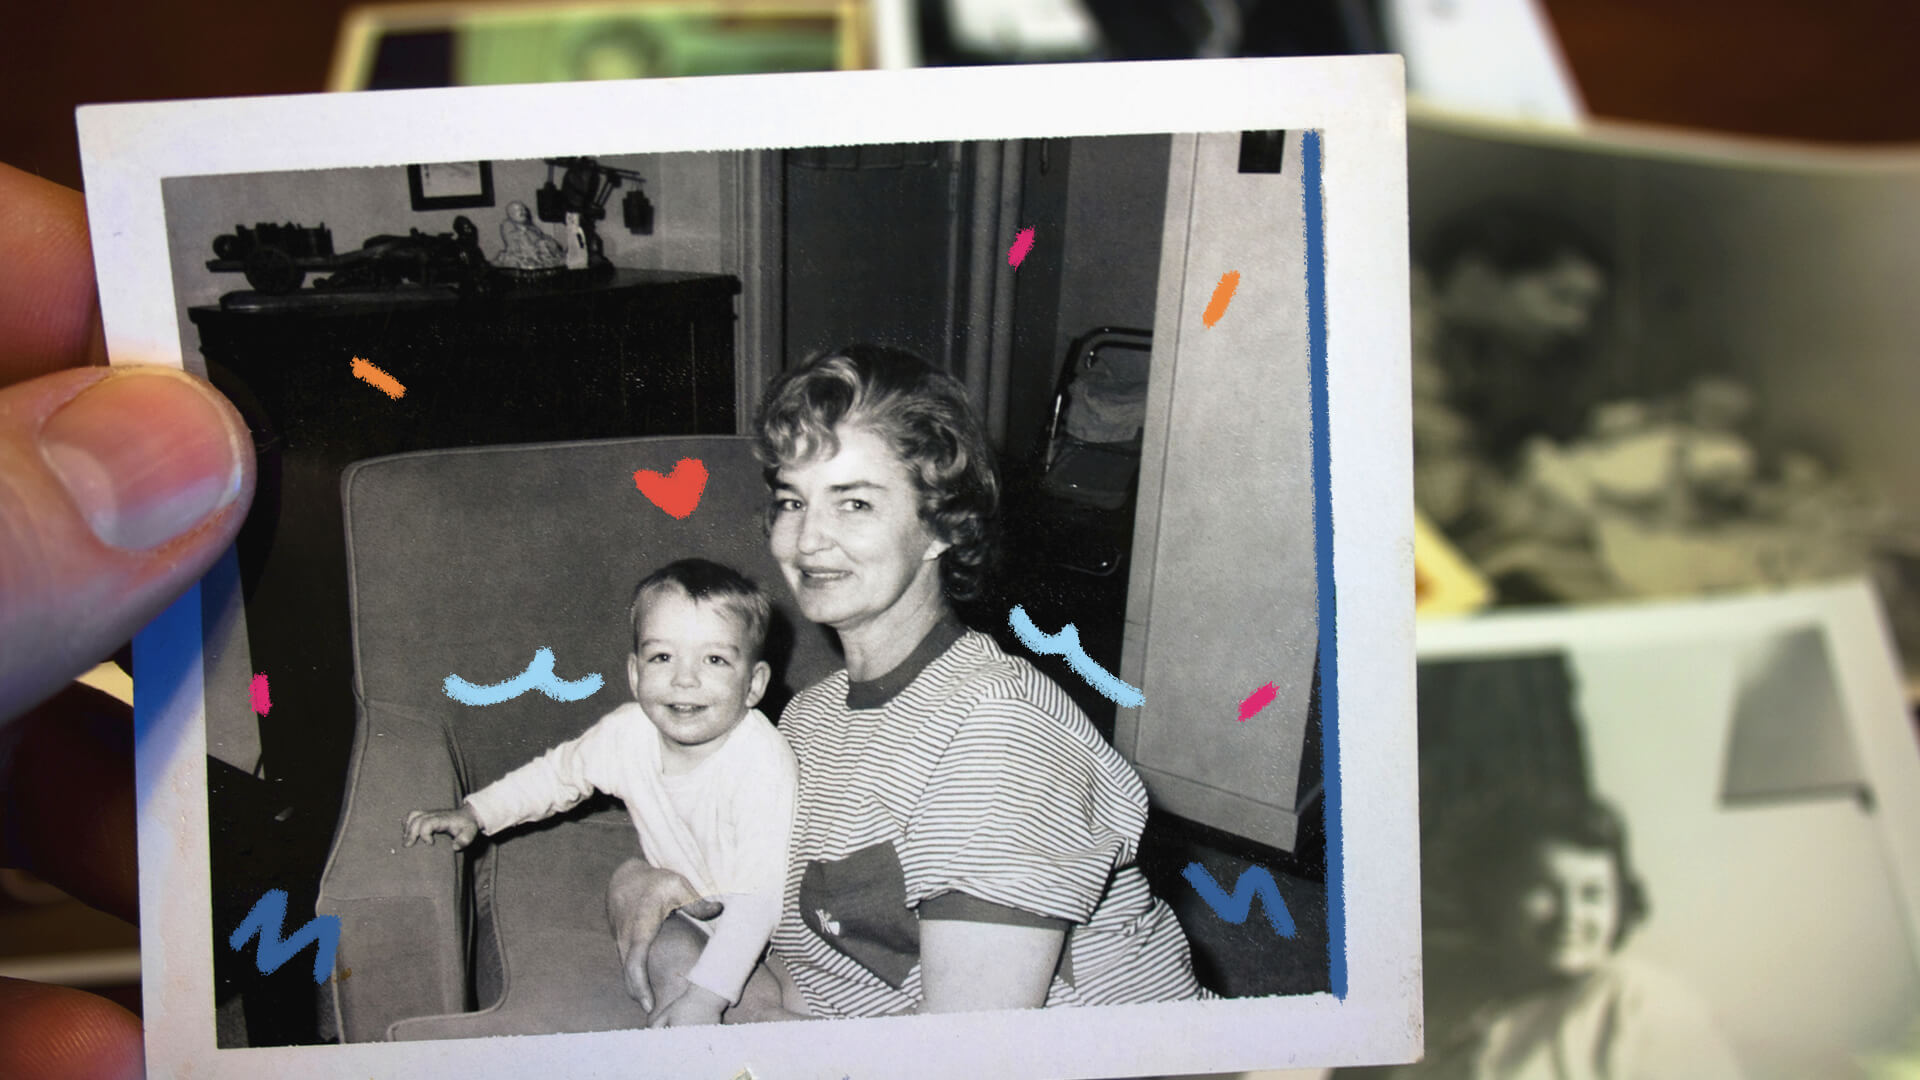 Na imagem, fotografia polaroid de uma mãe com o filho. Eles são brancos, sorriem e estão em uma poltrona. A imagem possui intervenções de rabiscos coloridos.